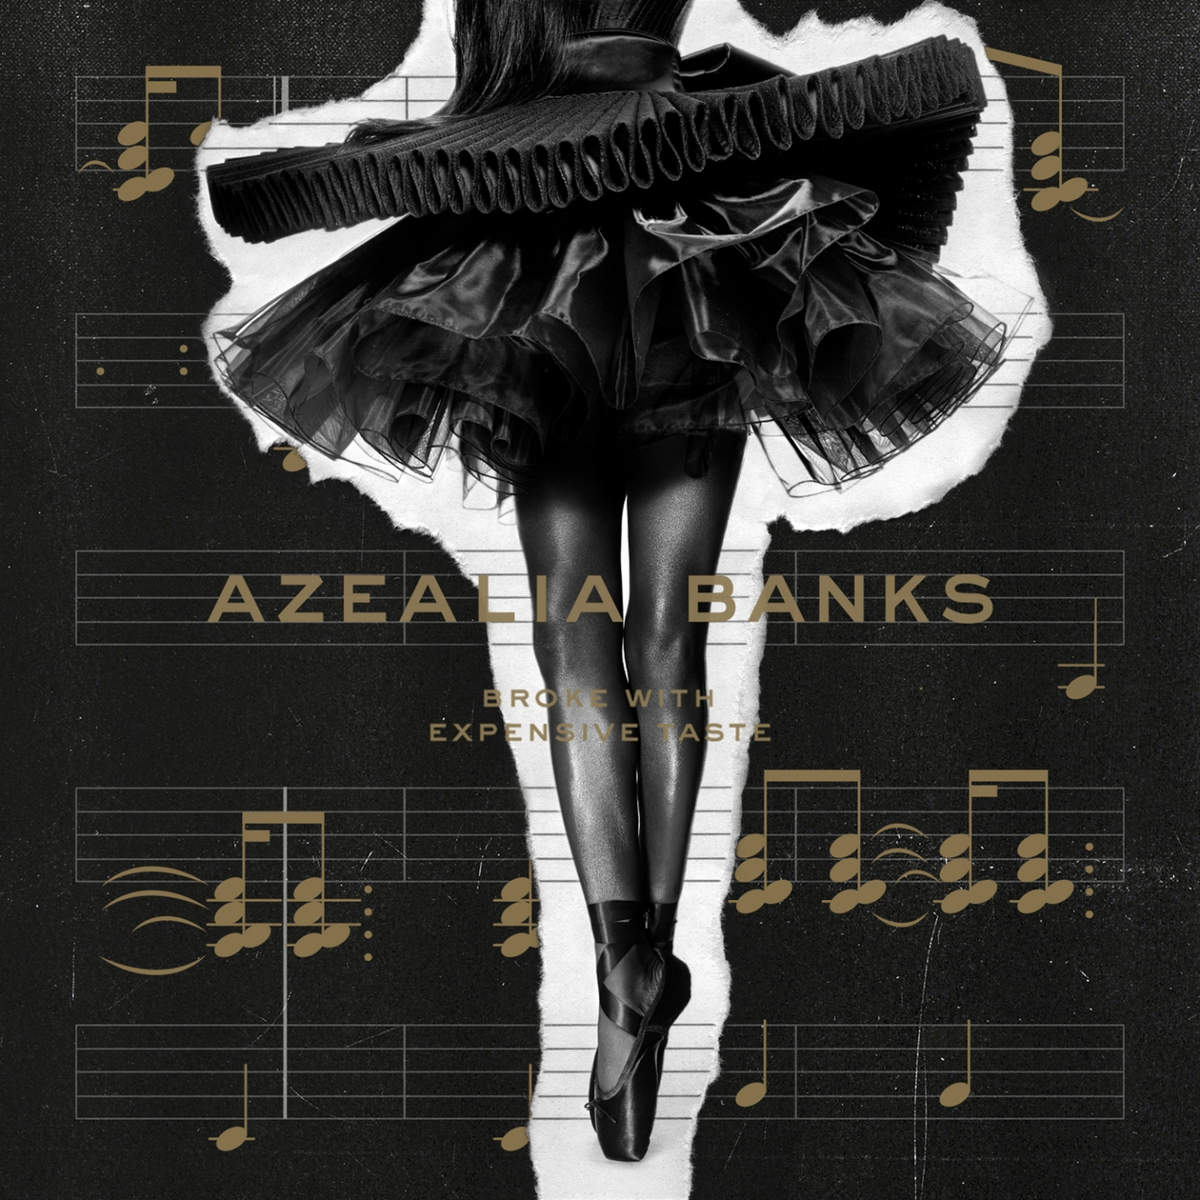 Azealia-Banks-Broke-With-Expensive-Taste-2014-1200x1200